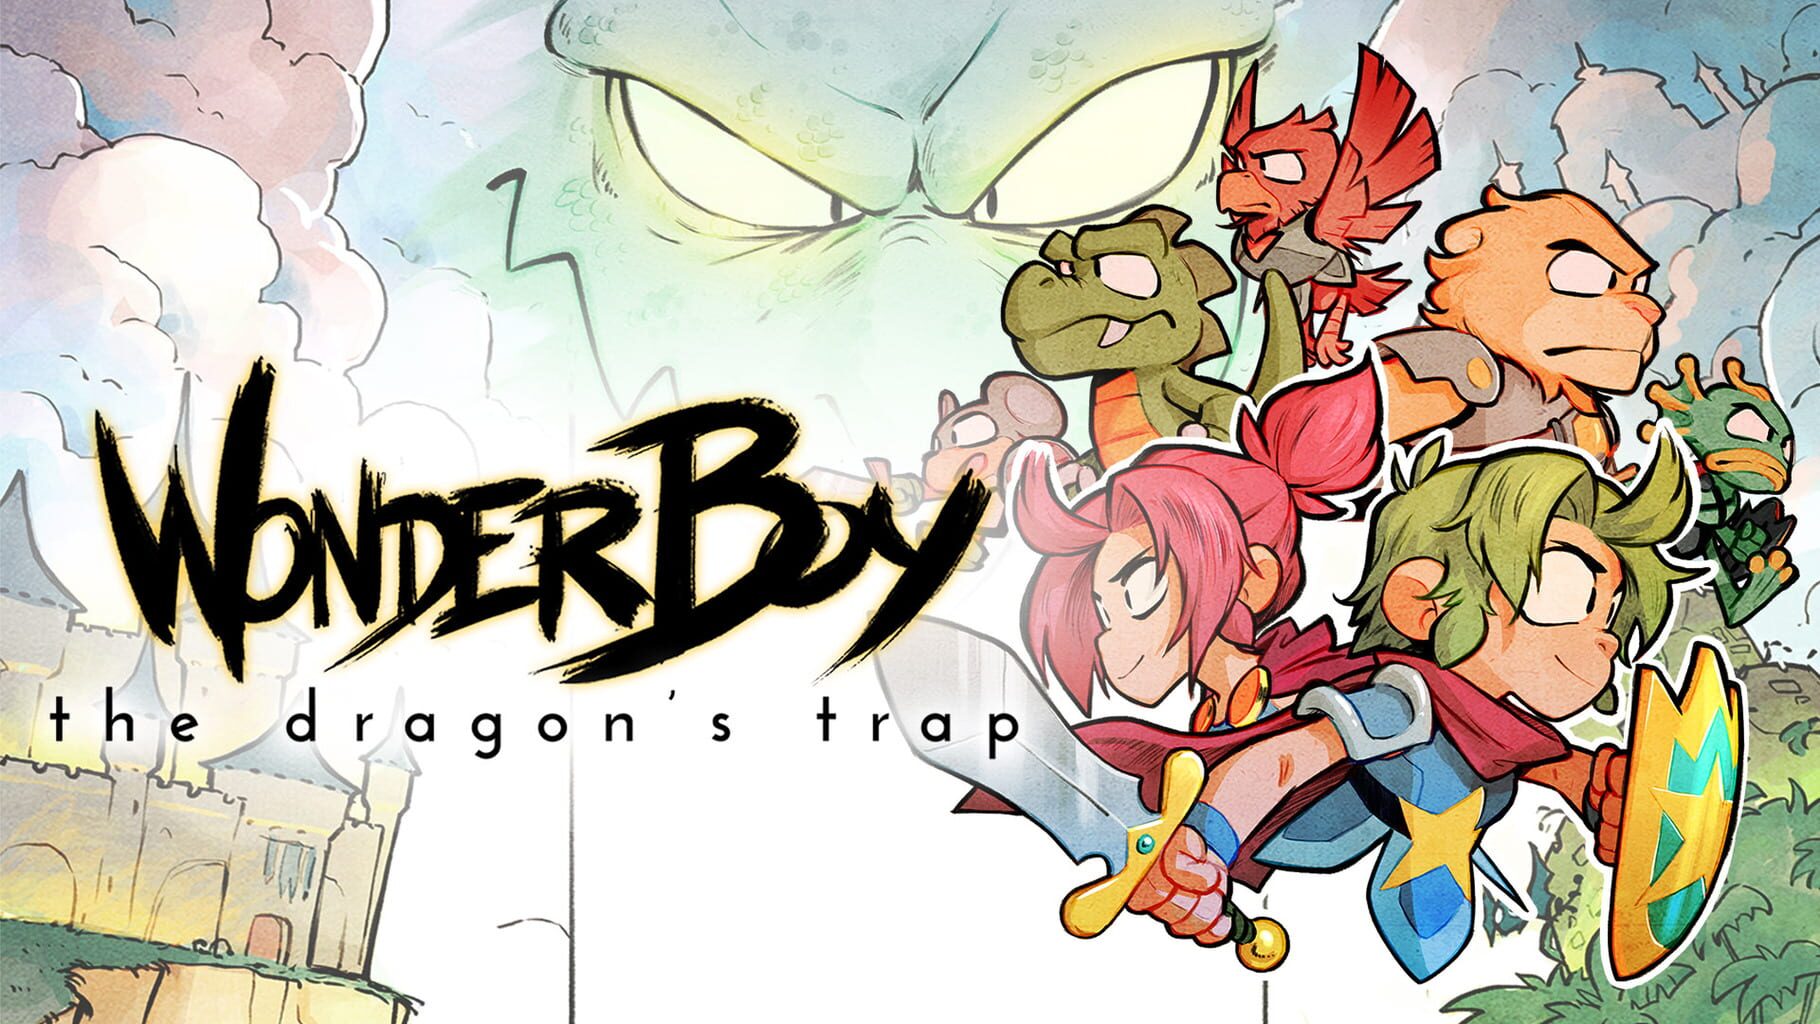 Arte - Wonder Boy: The Dragon's Trap